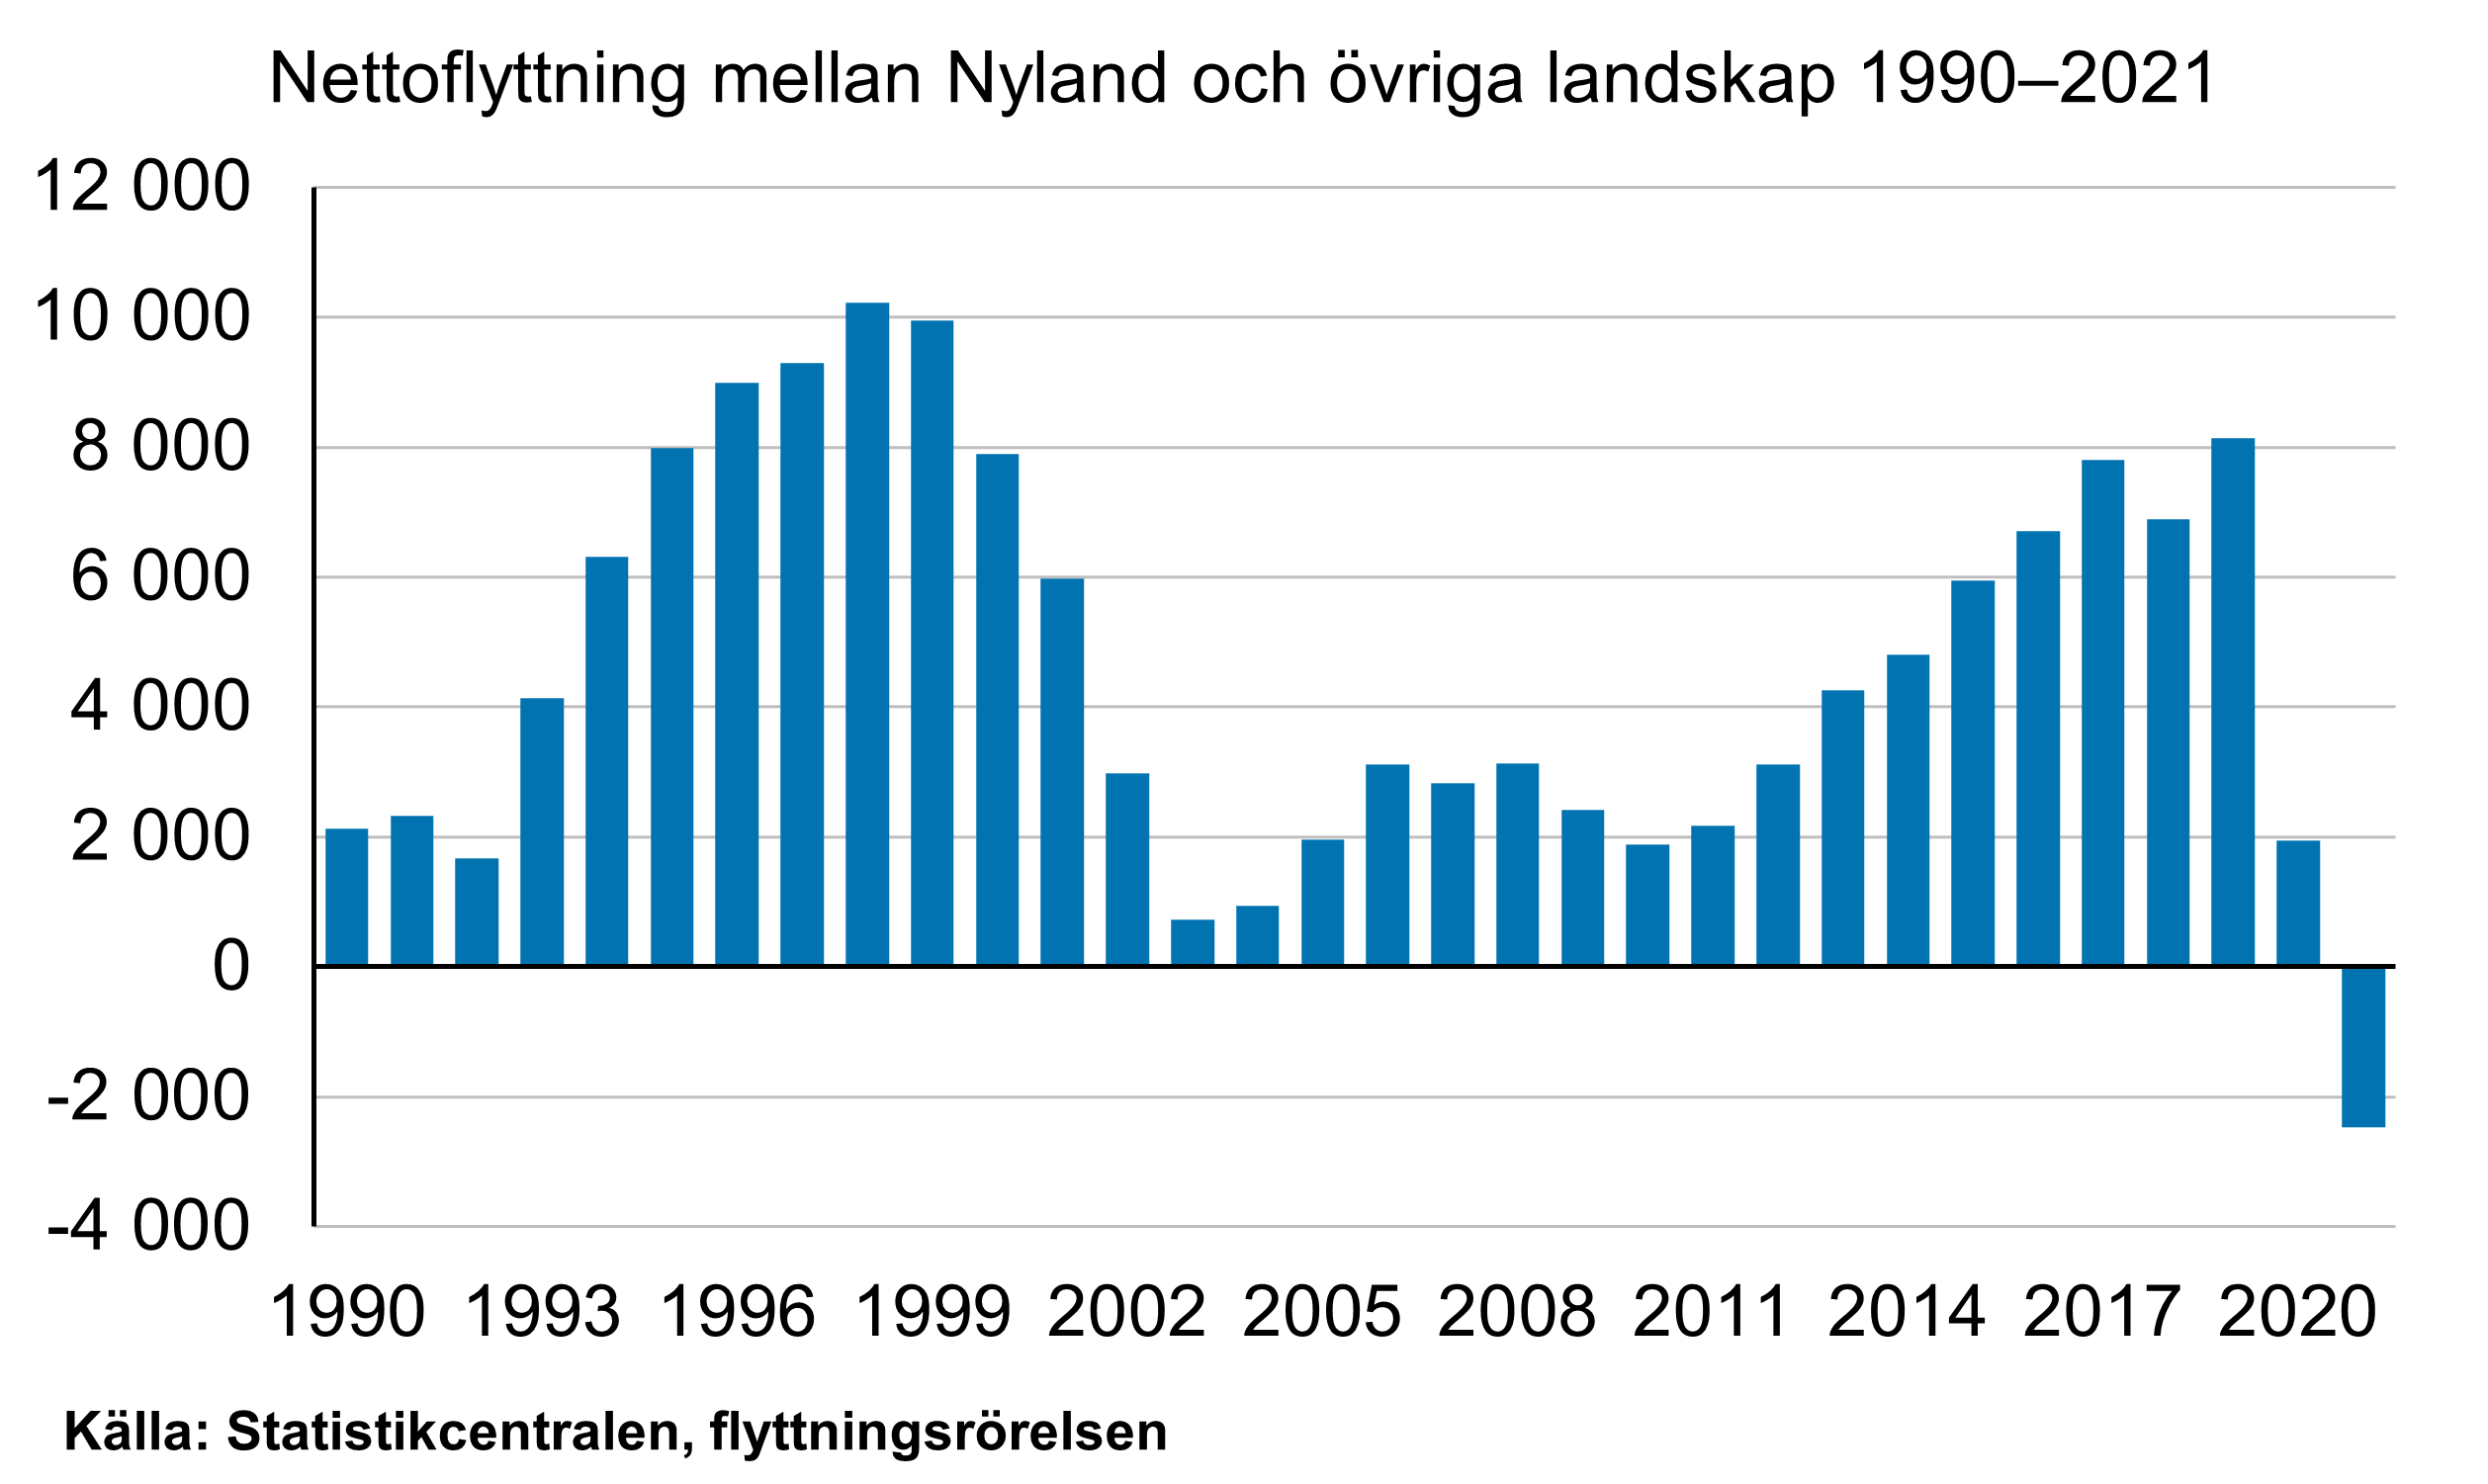 Stapeldiagrammet visar nettoflyttningen mellan Nyland och övriga Finland. Under 1990-talet steg inrikes nettoomflyttningen för Nylands del från omkring 2 000 personer till omkring 10 000 personer. Under 2000-talet sjönk inrikes nettoomflyttningen för Nyland till under tusen personer, varefter den åter steg till 8 000 personer under den senare hälften av 2010-talet. År 2021 sjönk inrikes omflyttningen för Nylands del till den lägsta nivån under granskningsperioden, vilket innebar en förlust på drygt 2 000 personer.